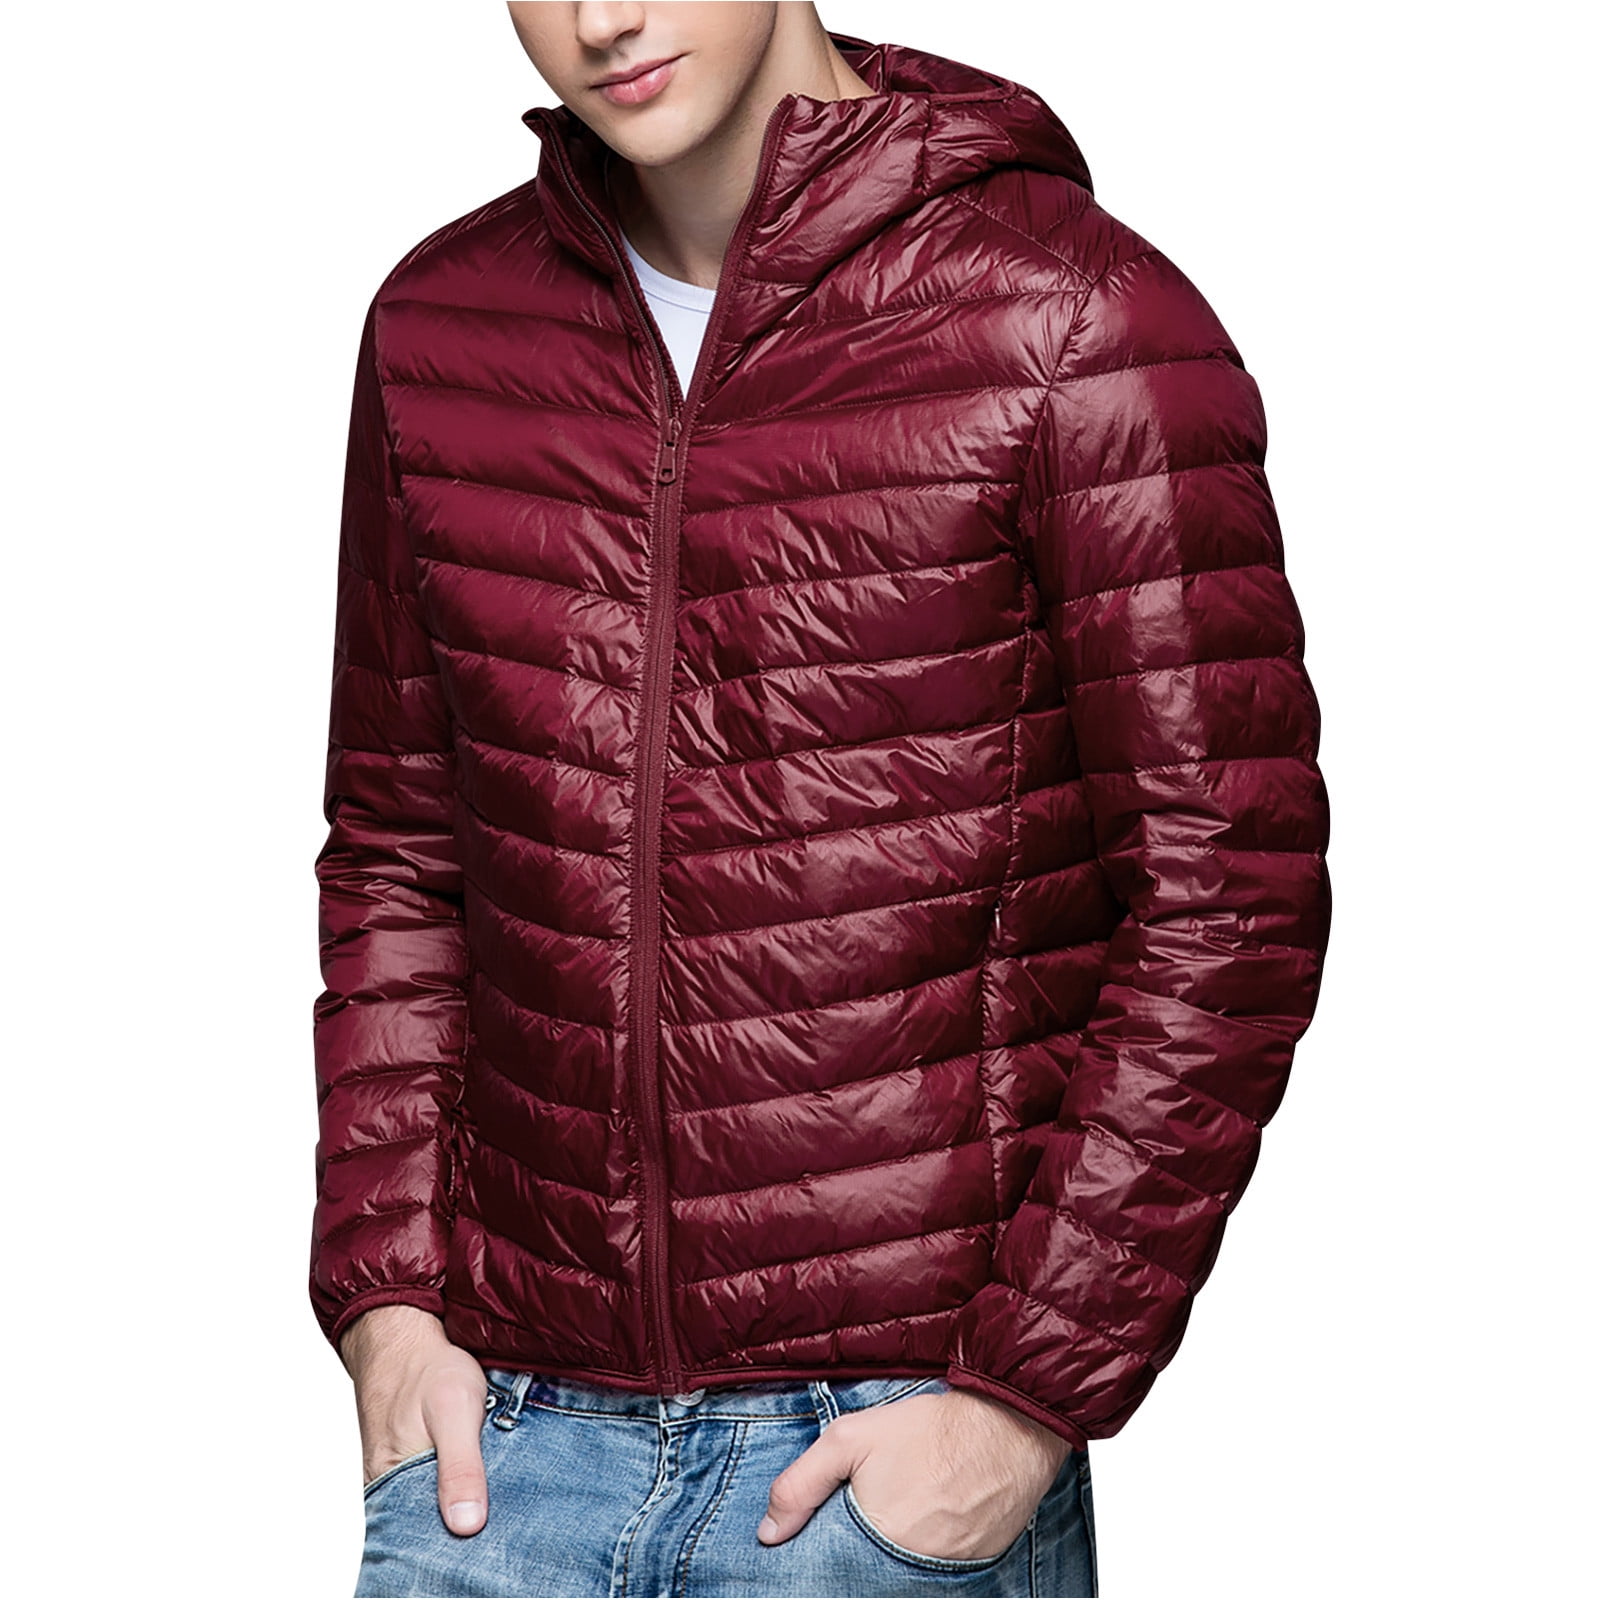 Men's Tops Male Coat Hooded Tops Jacket Stylish Winter Zipper Outerwear Coat